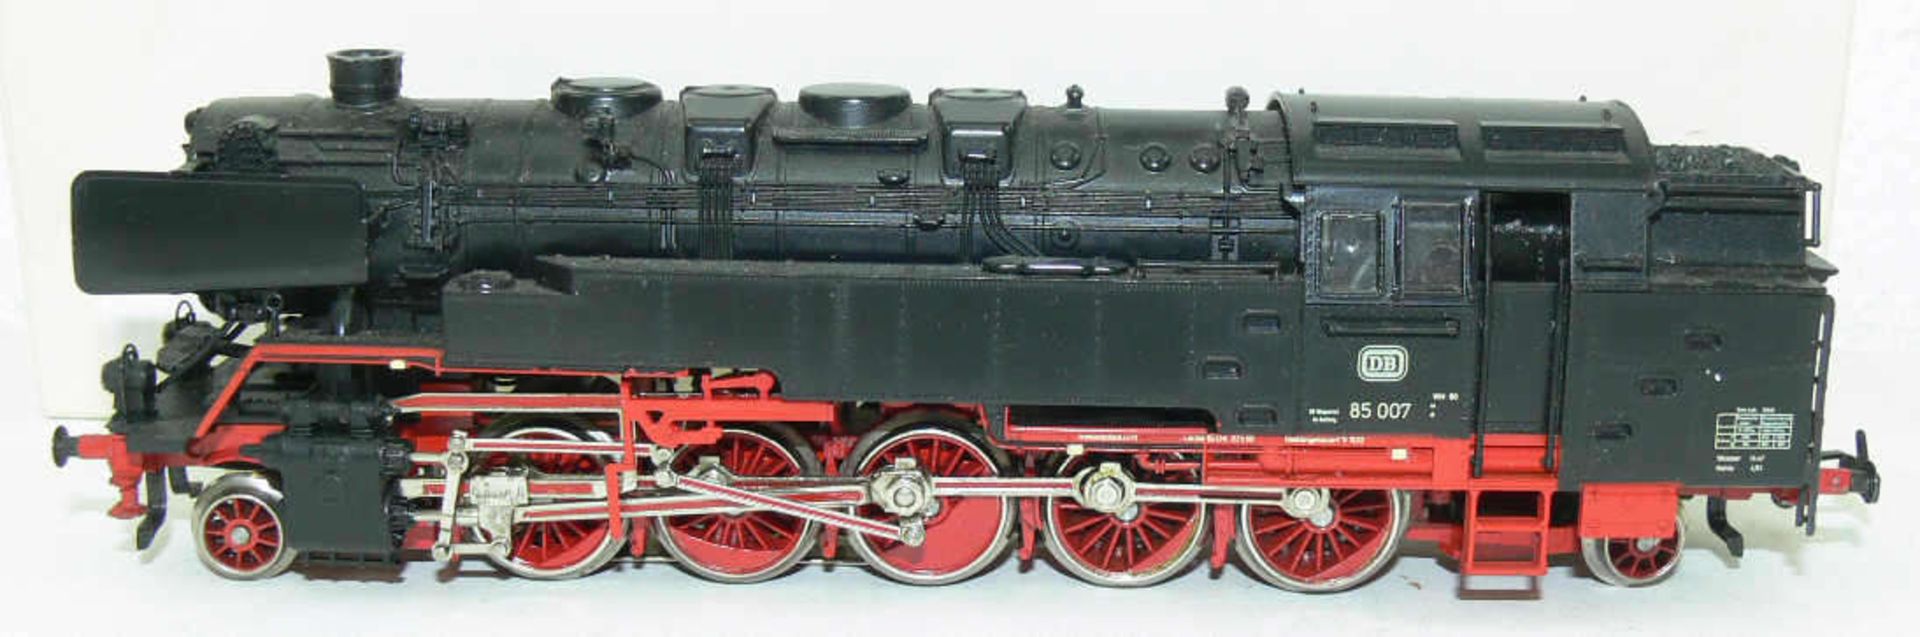 Märklin H0 3309 Dampflokomotive BR 85 der DB. BN 85 007. Neuwertiger Zustand. In falscher OVP.